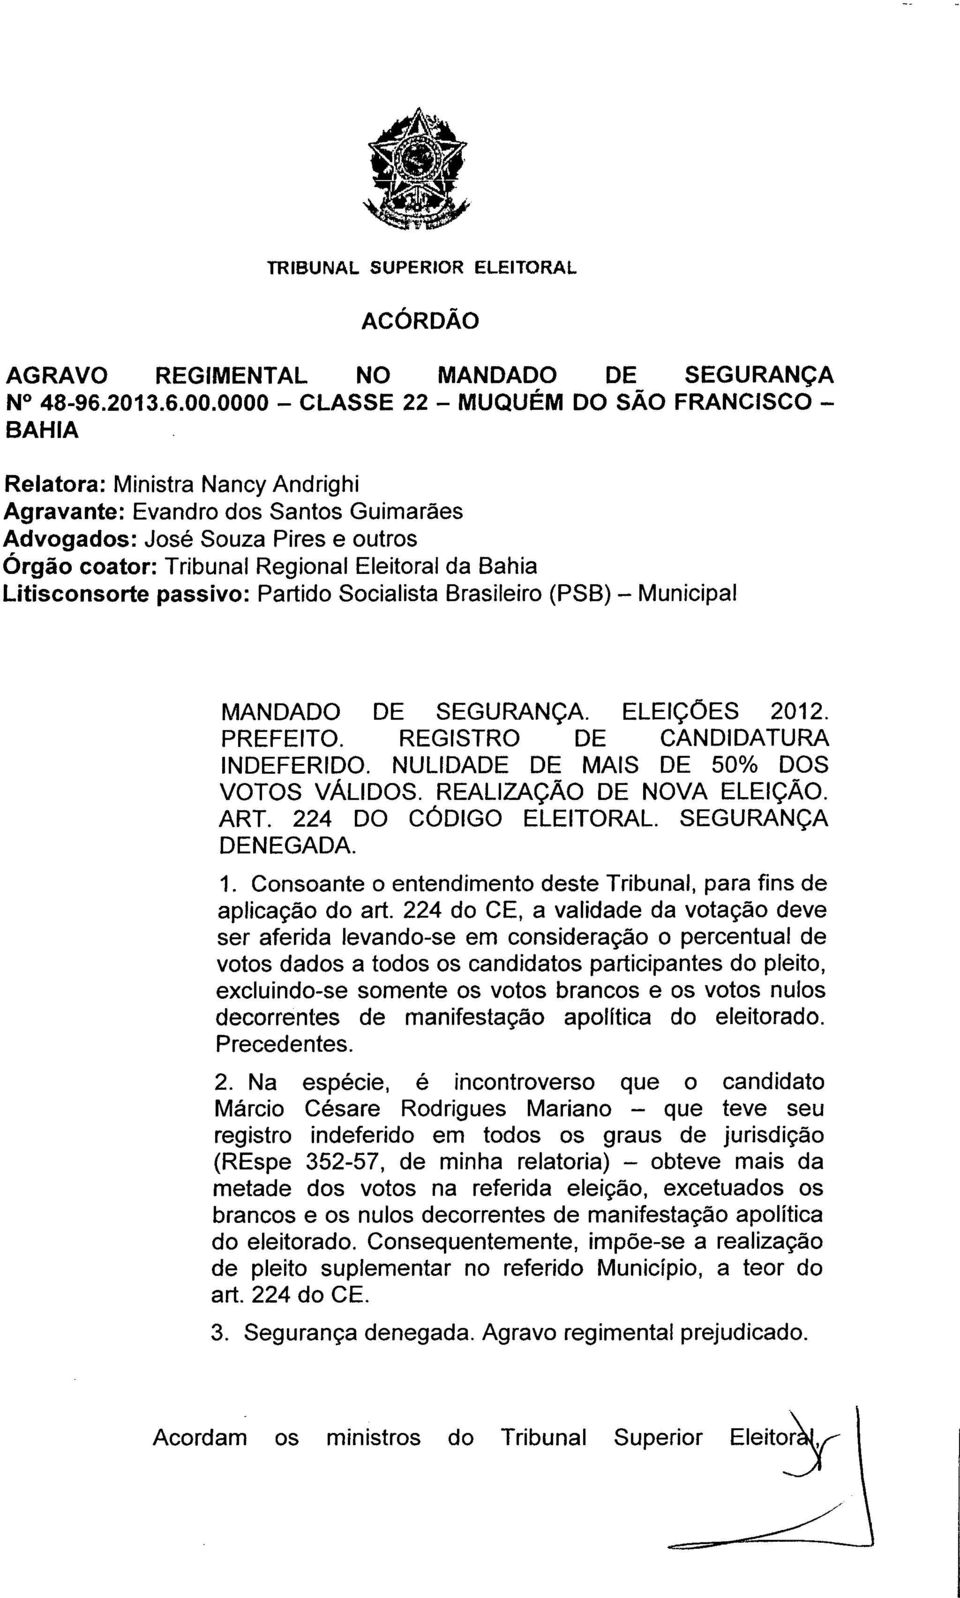 Eleitoral da Bahia Litisconsorte passivo: Partido Socialista Brasileiro (PSB) - Municipal MANDADO DE SEGURANÇA. ELEIÇÕES 2012. PREFEITO. REGISTRO DE CANDIDATURA INDEFERIDO.